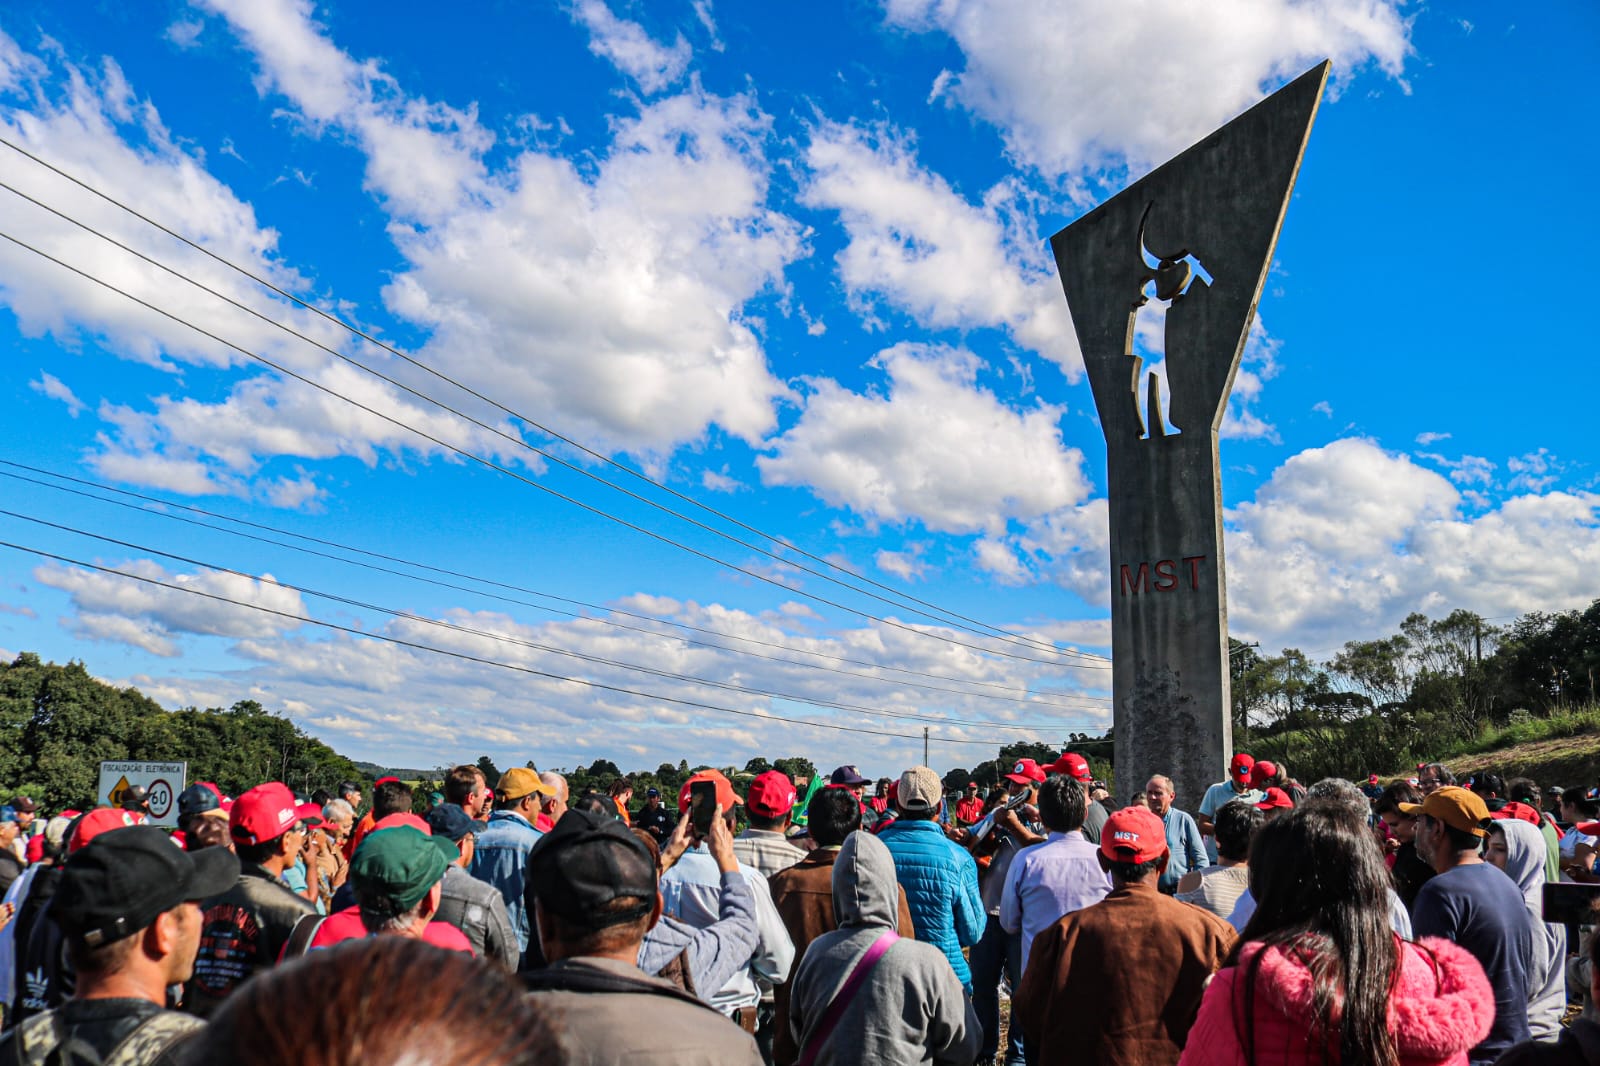 Todo ano, no dia 02 de maio, trabalhadores rurais Sem Terra se reúnem em frente ao monumento. Foto: Juliana Barbosa/MST-PR